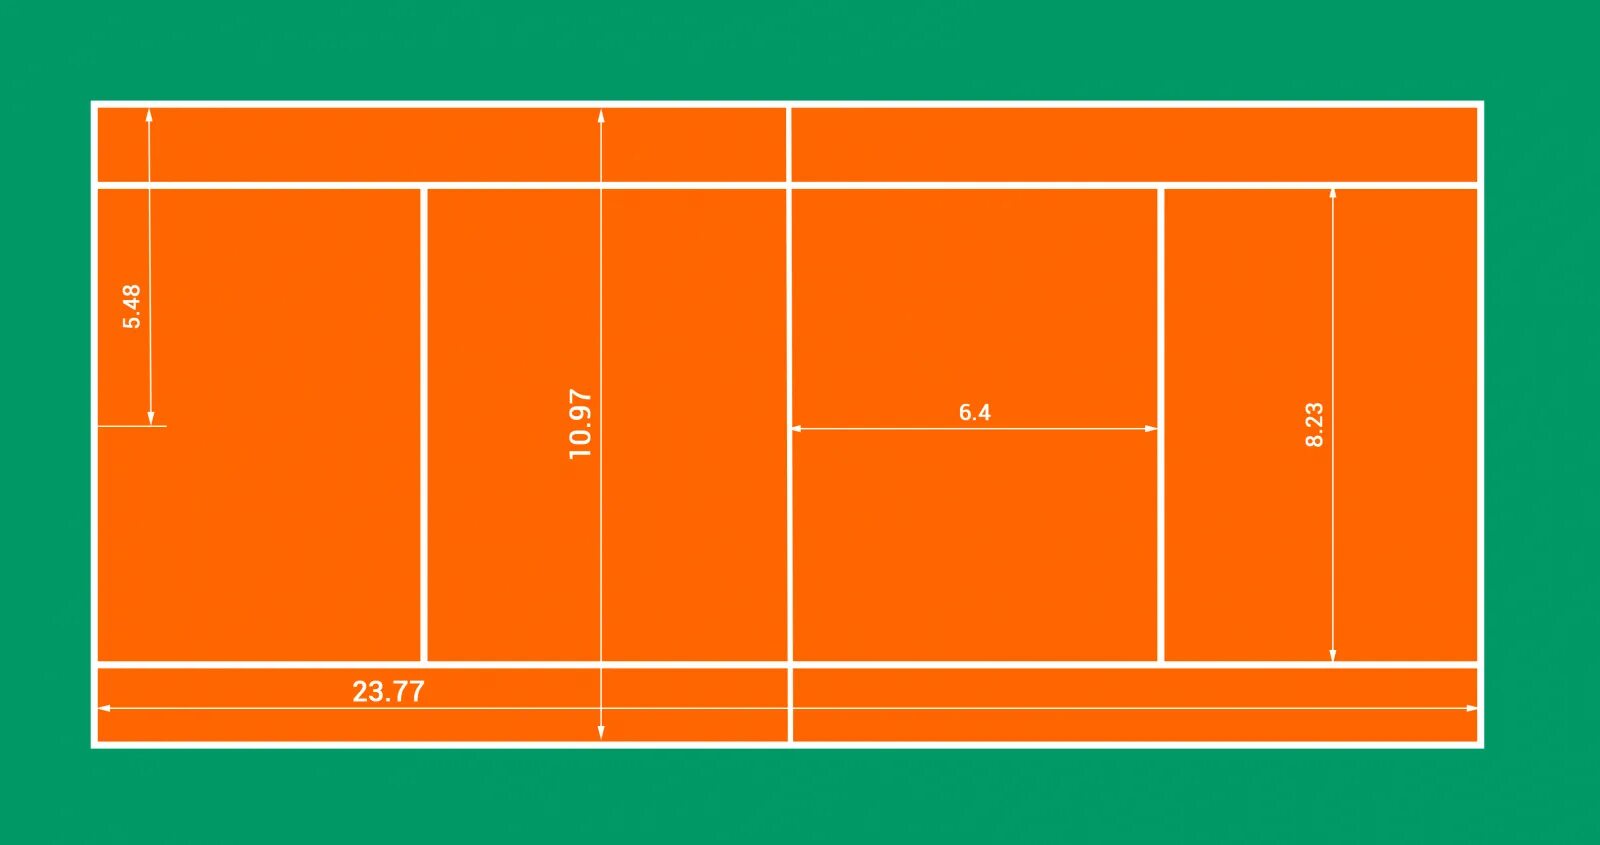 Разметка теннисного корта большой теннис. Теннисный корт разметка стандарт. Площадь теннисного корта м2. Размеры теннисного корта для большого тенниса в метрах. Ширина теннисного корта